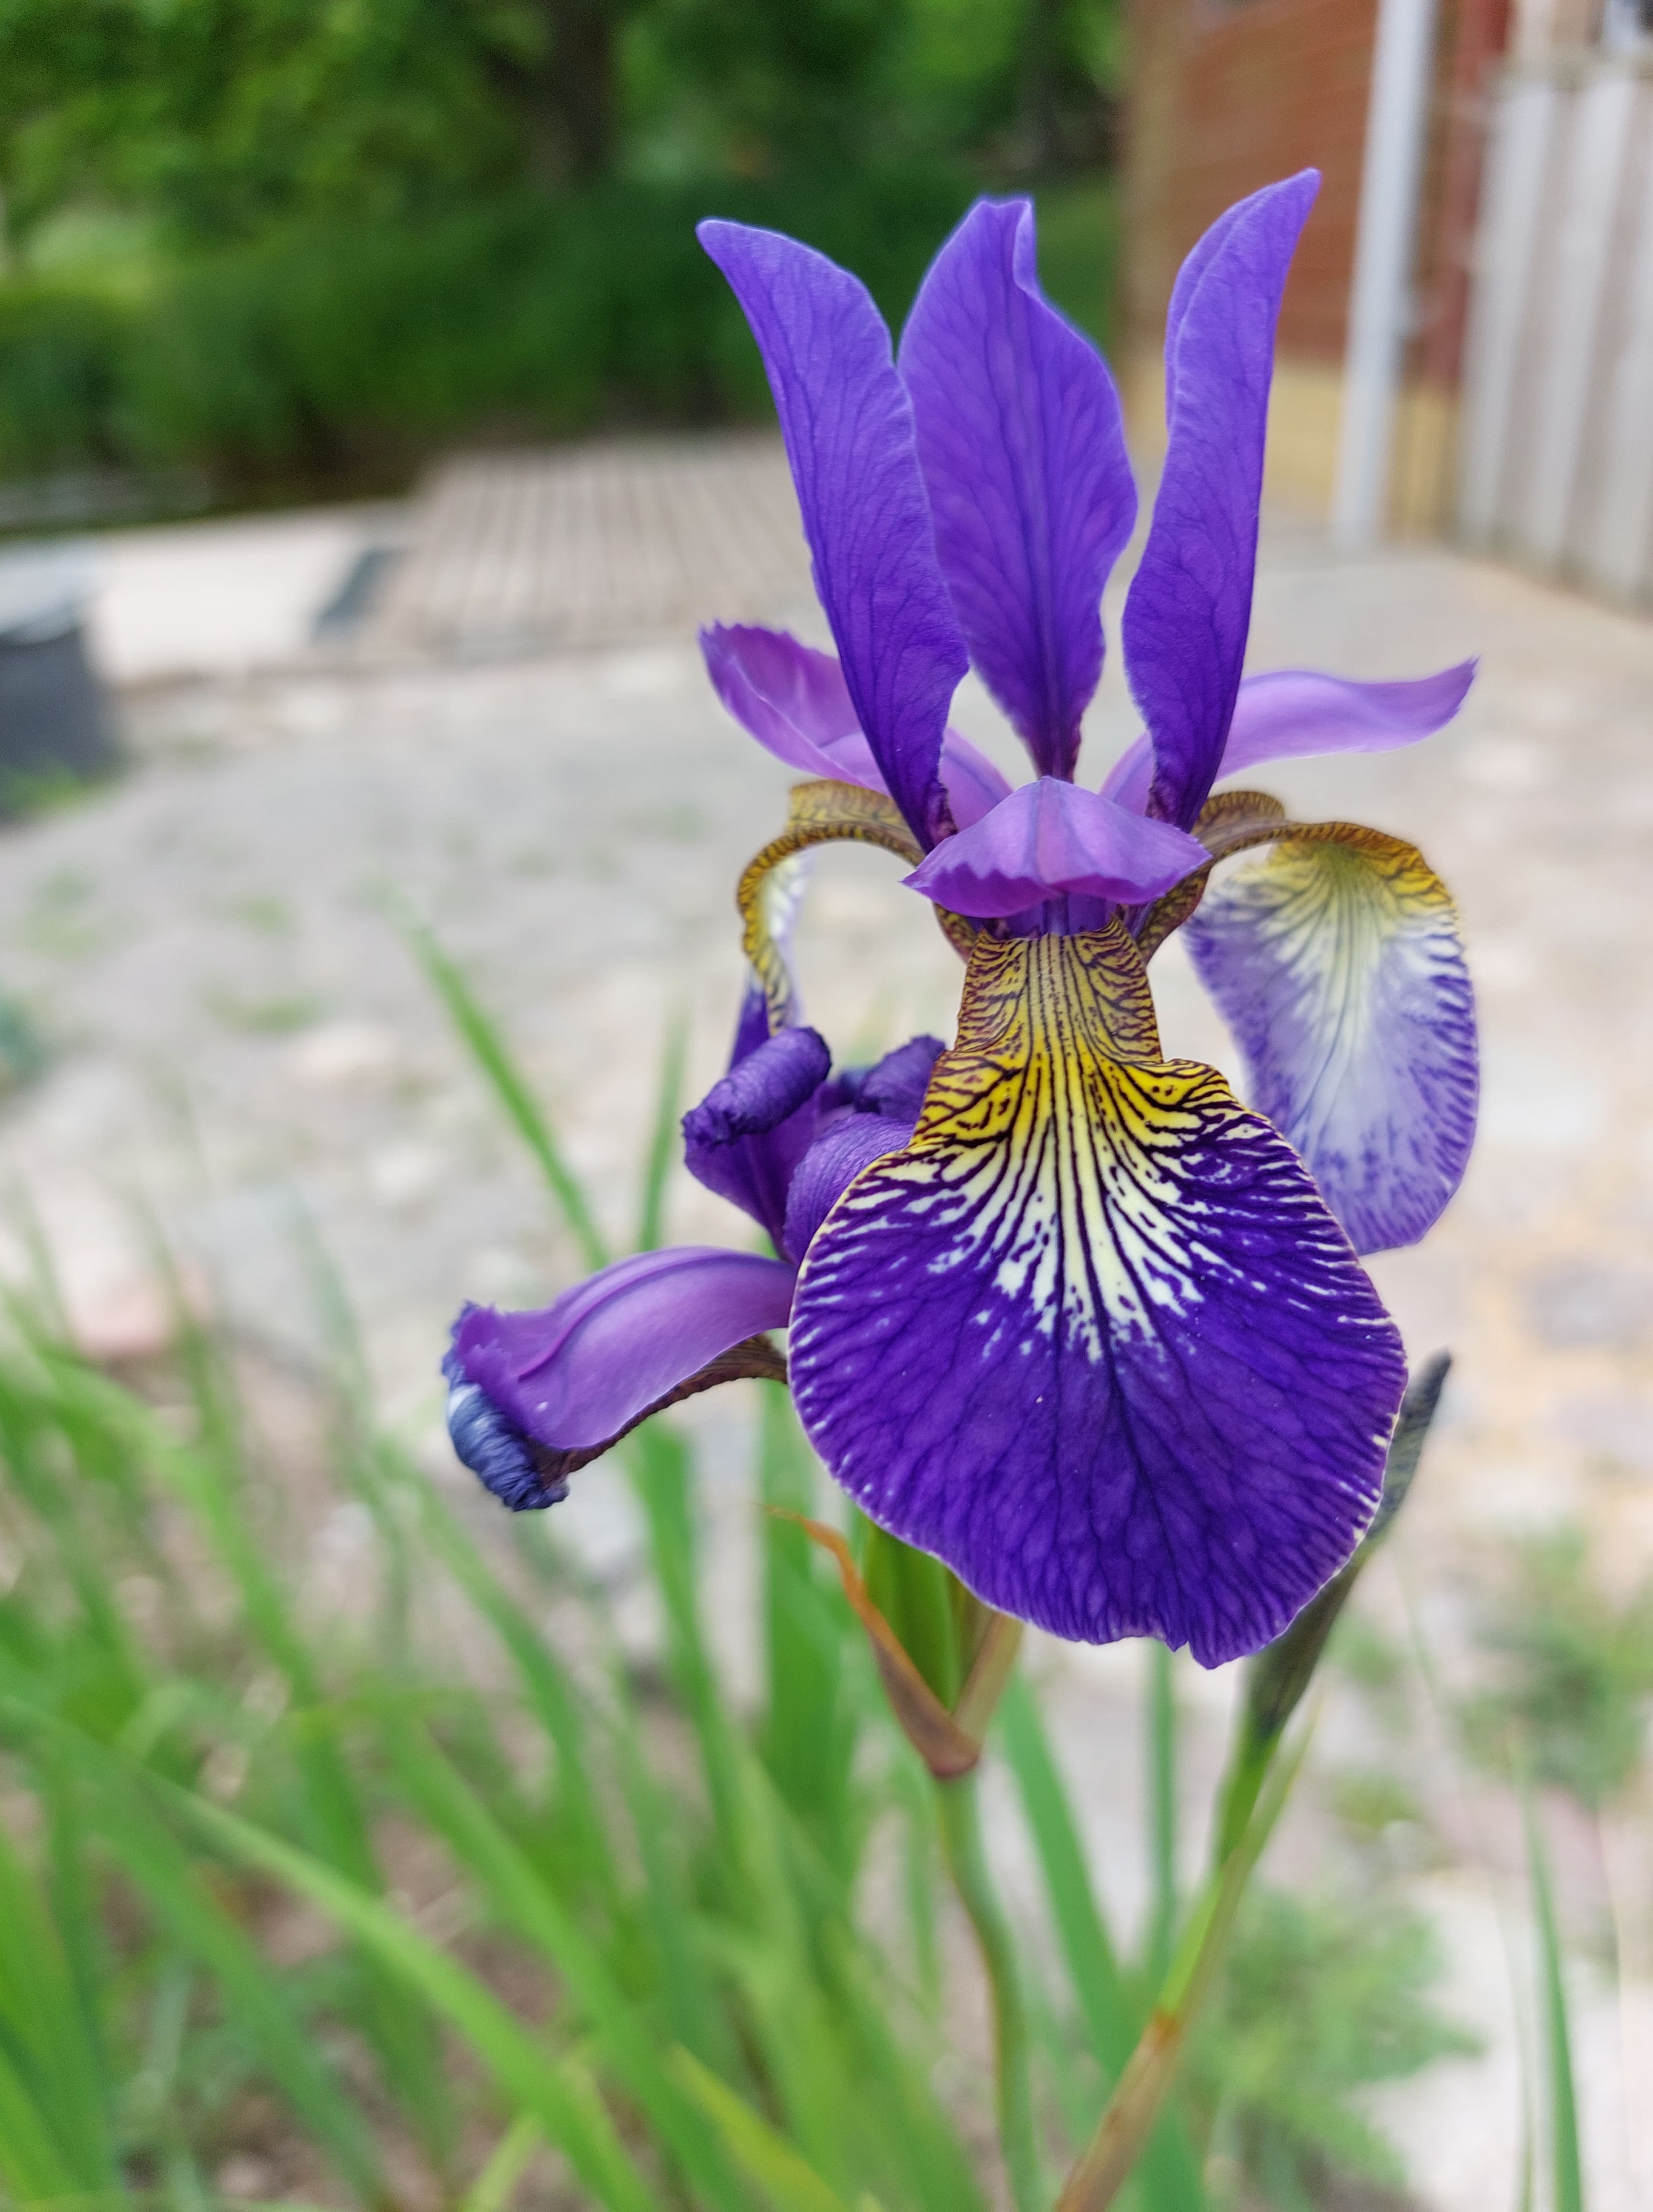 Tall blue iris (Iris spuria)